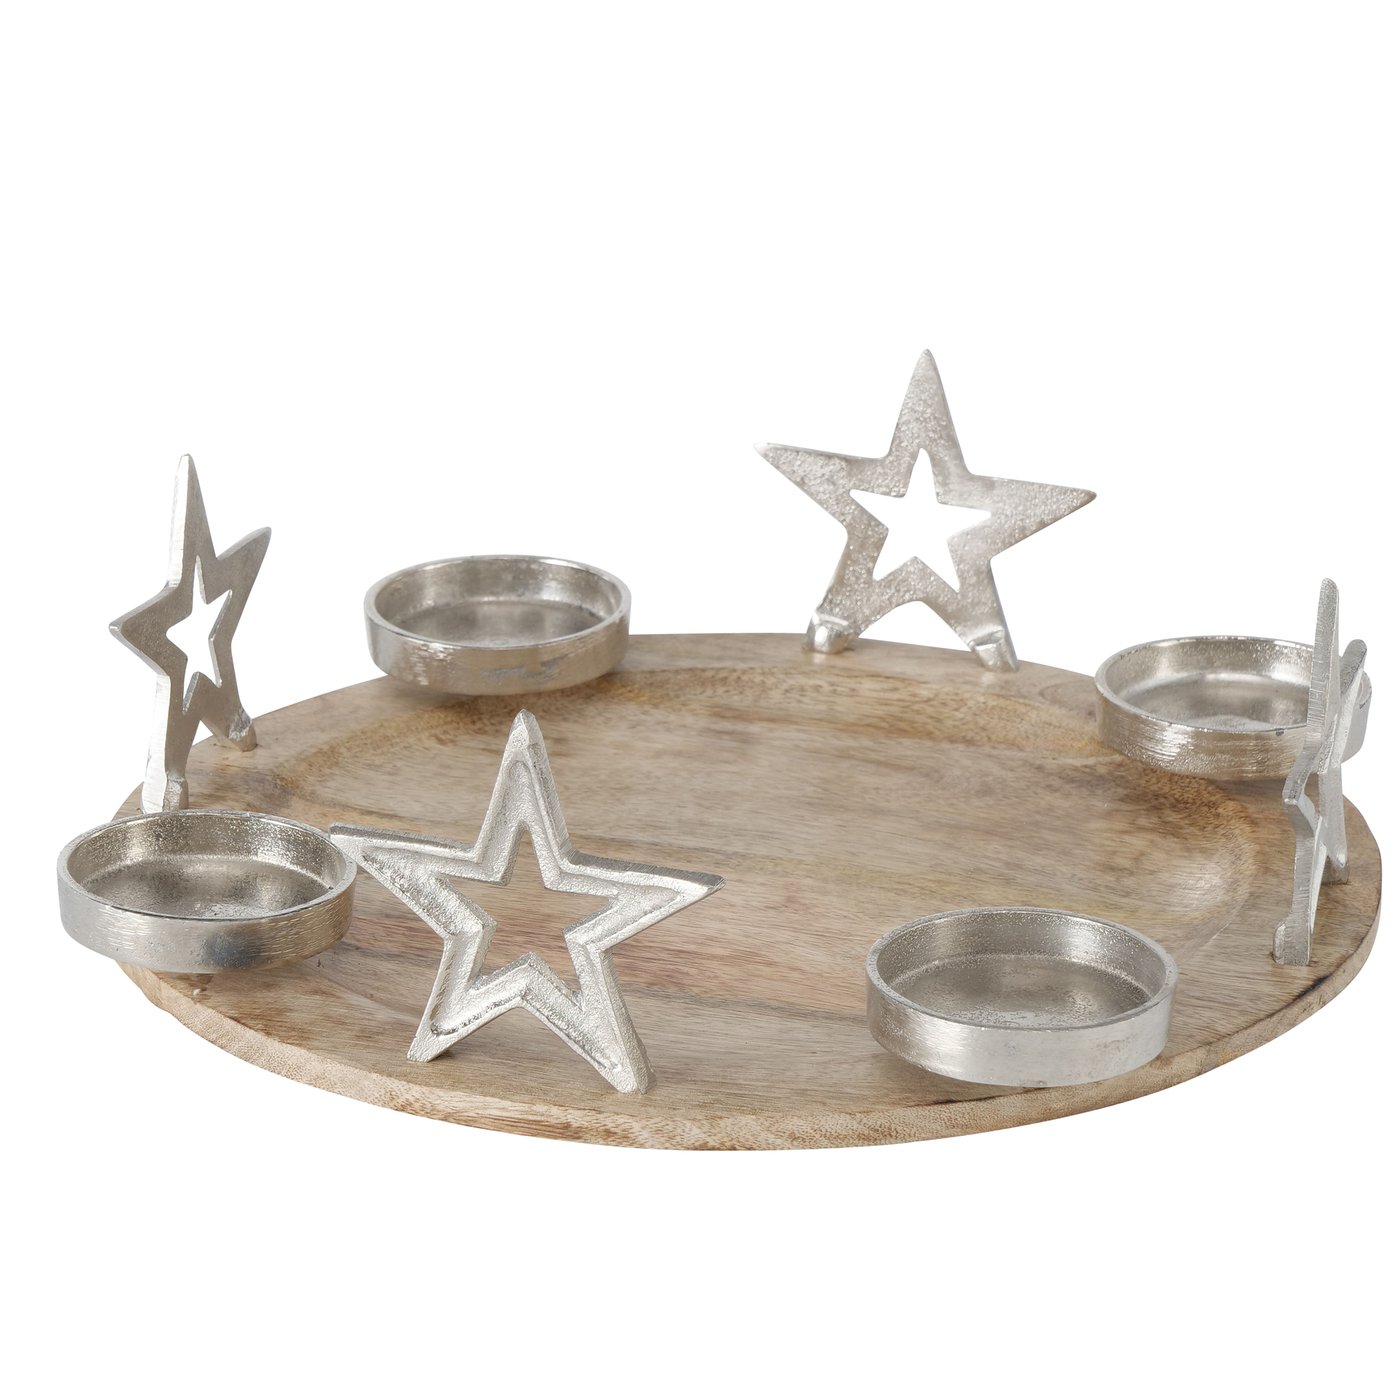 Holz Adventskranz Adventstablett rund mit Sternen silber Durchmesser 40cm, 2015726, 4020607943872